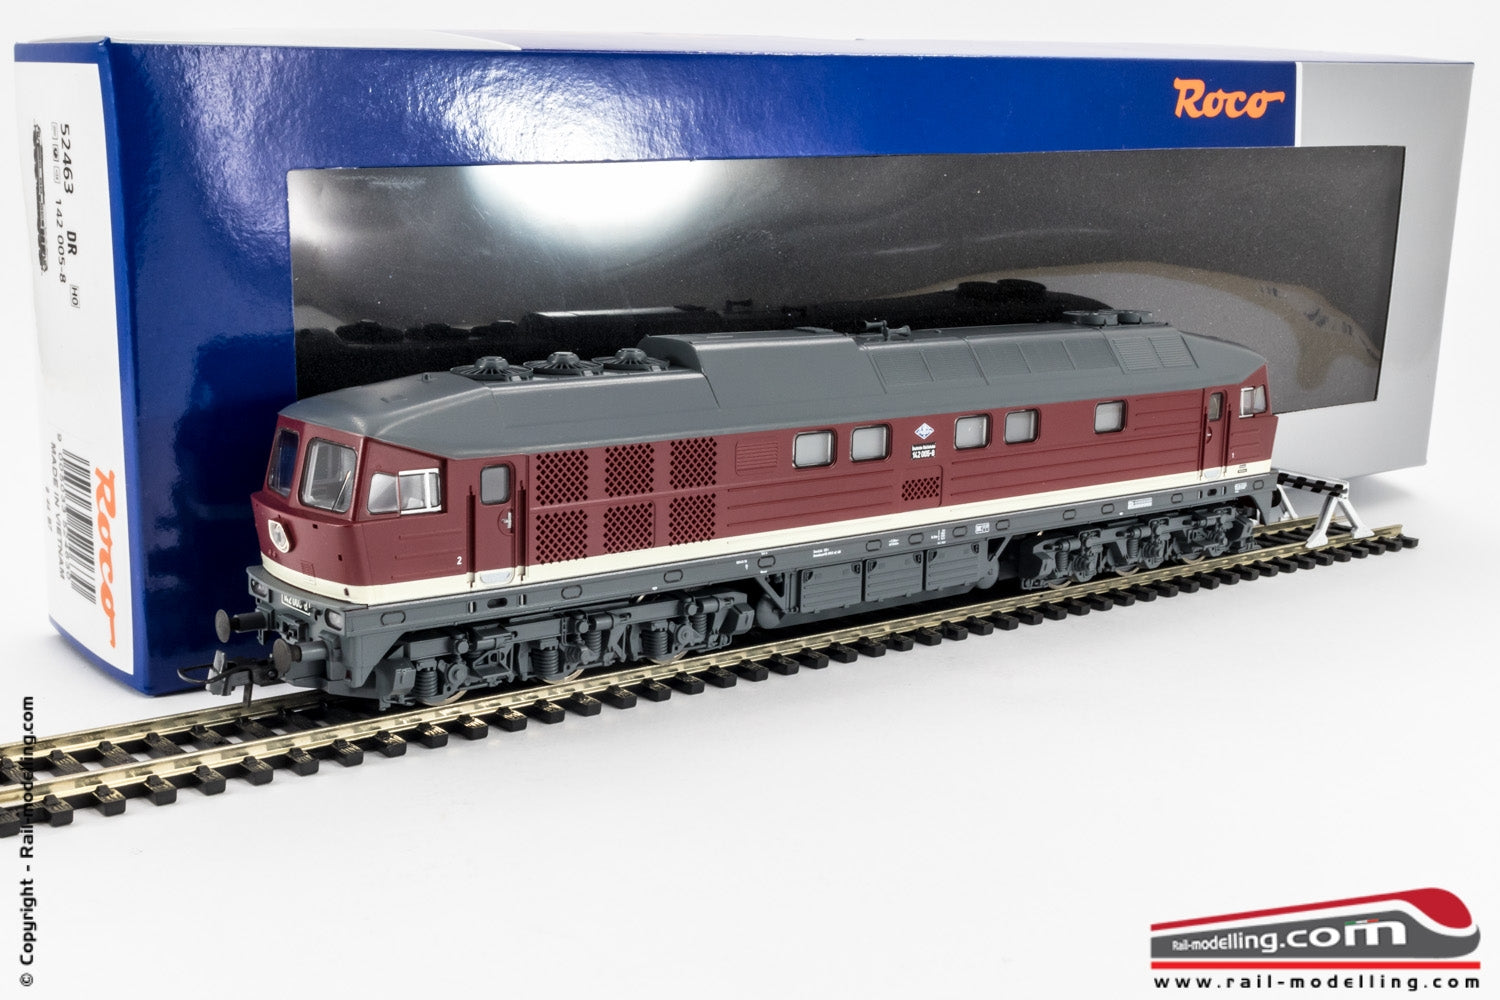 HOゲージ ROCO ディーゼル BR142 (DCC Sound) - 鉄道模型